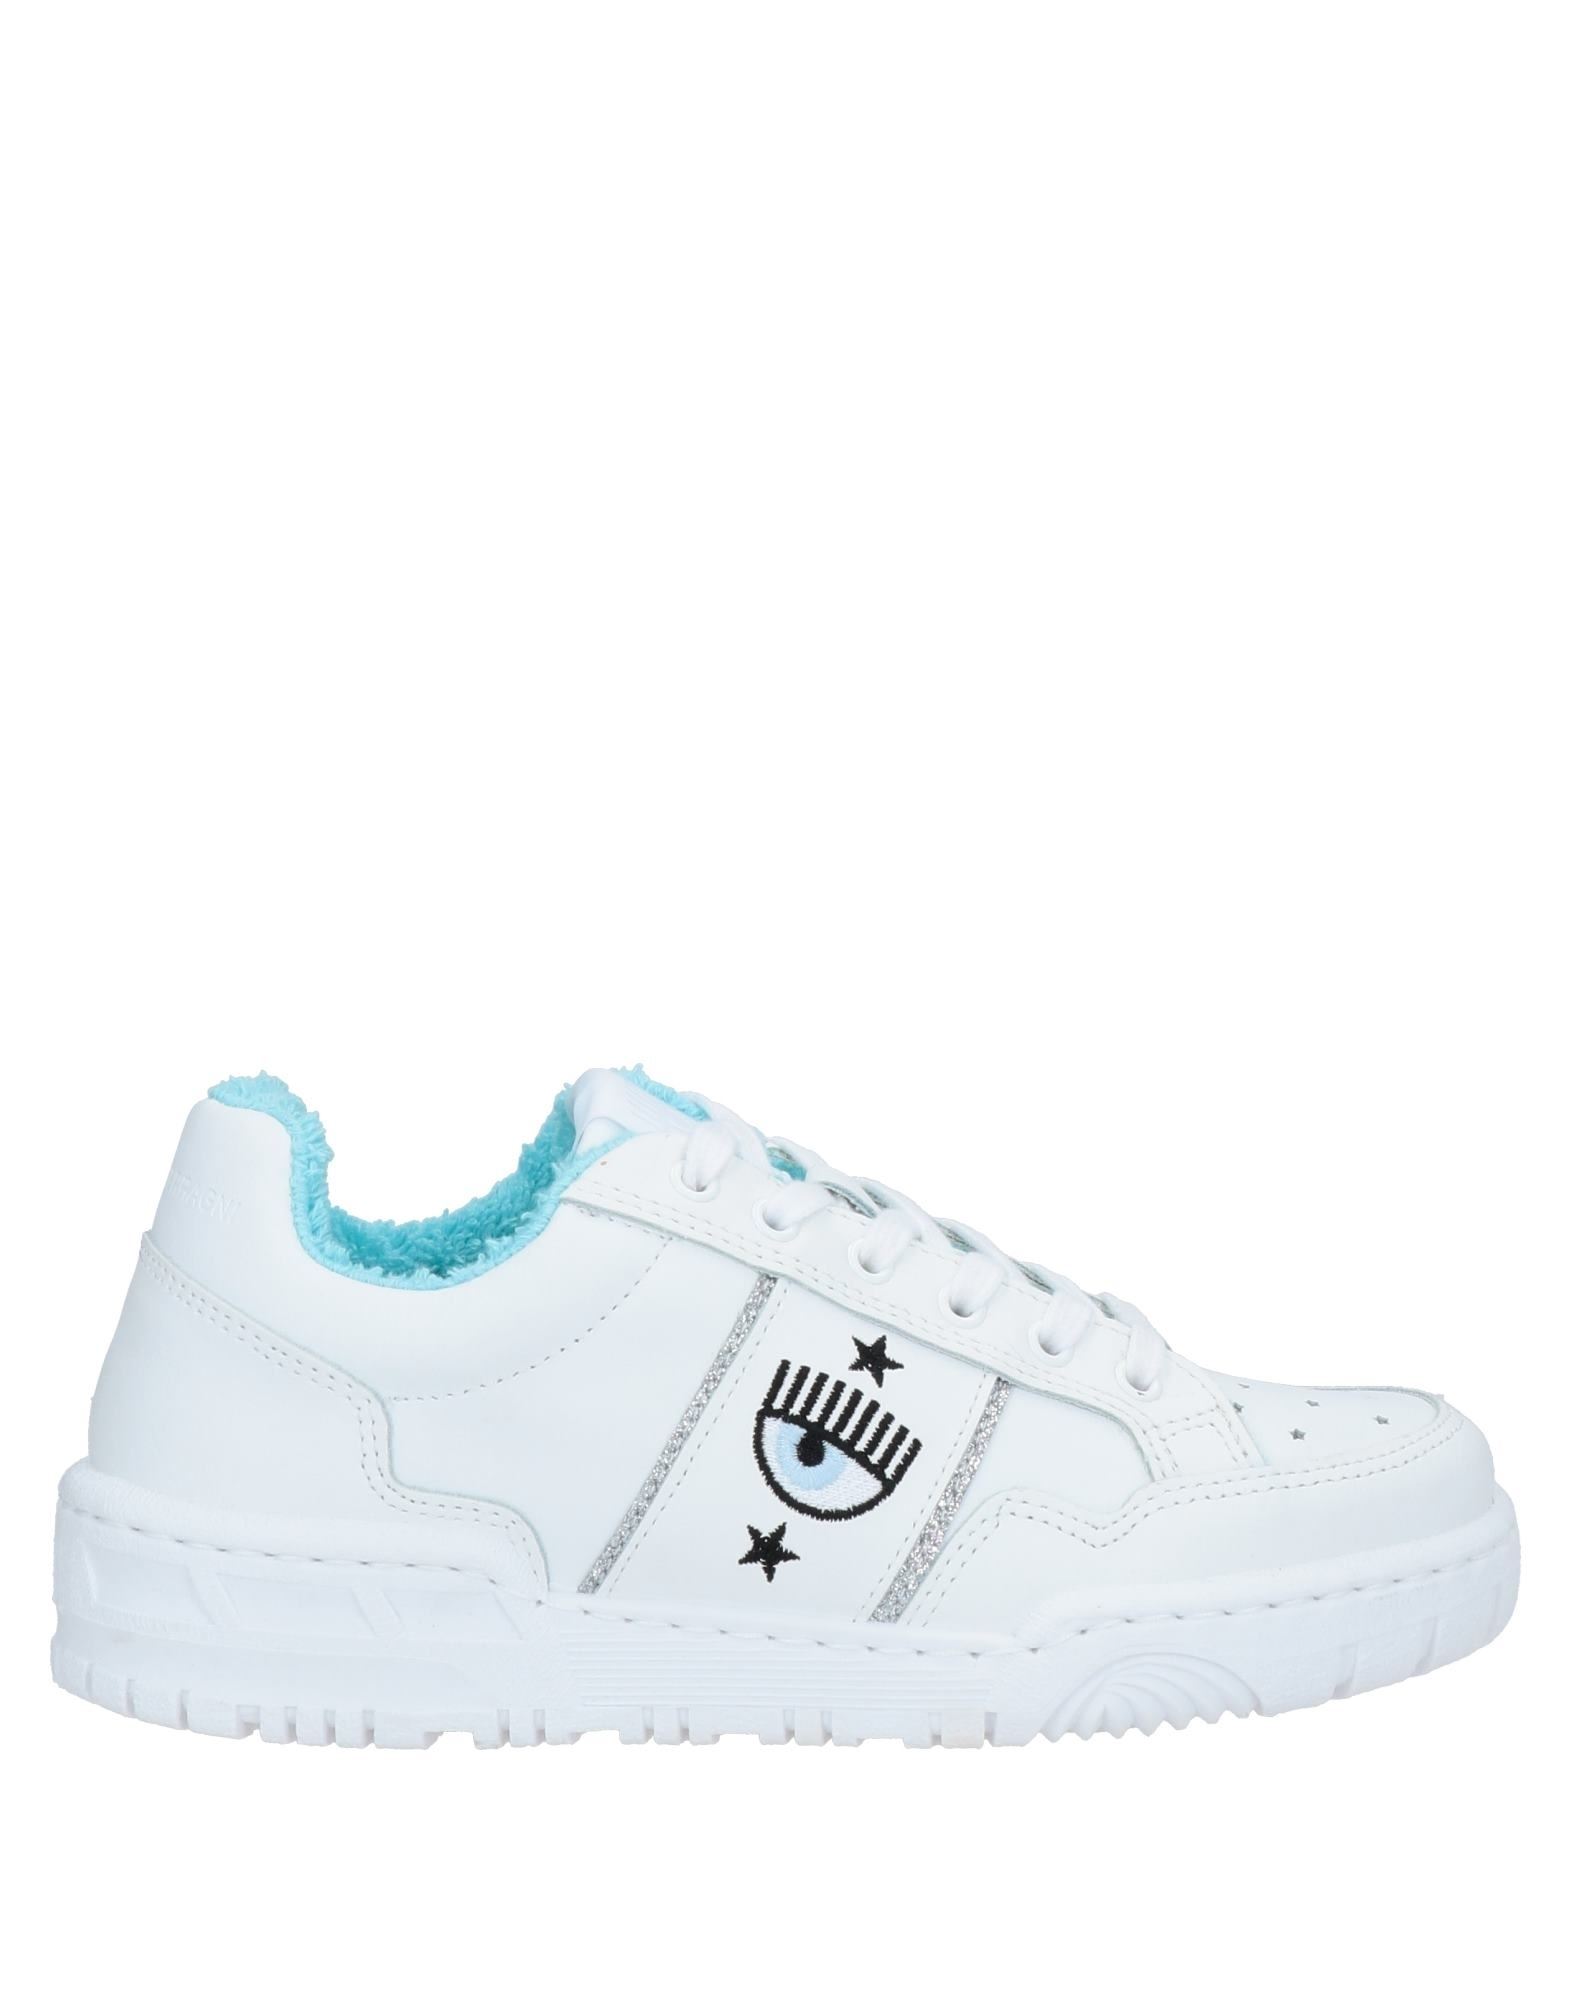 Chiara Ferragni Sneakers In White